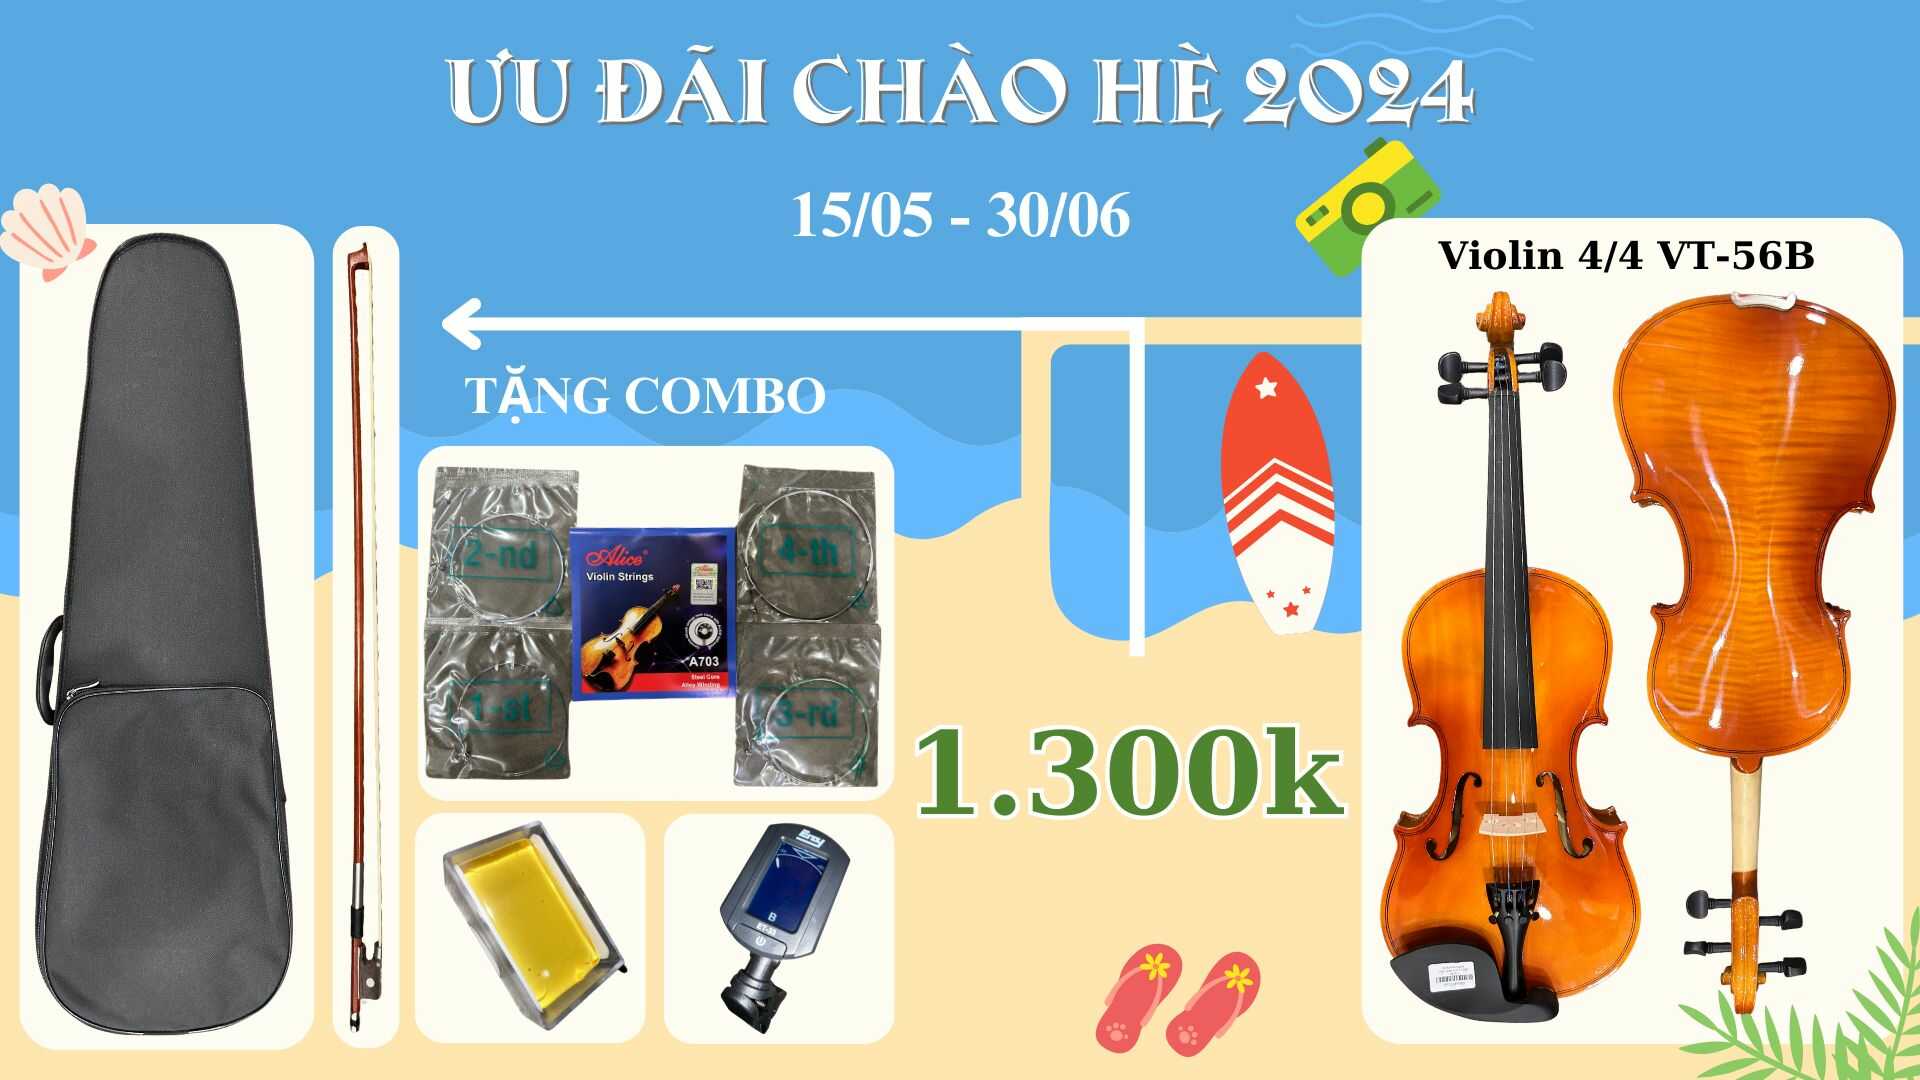 dan-violin-56b